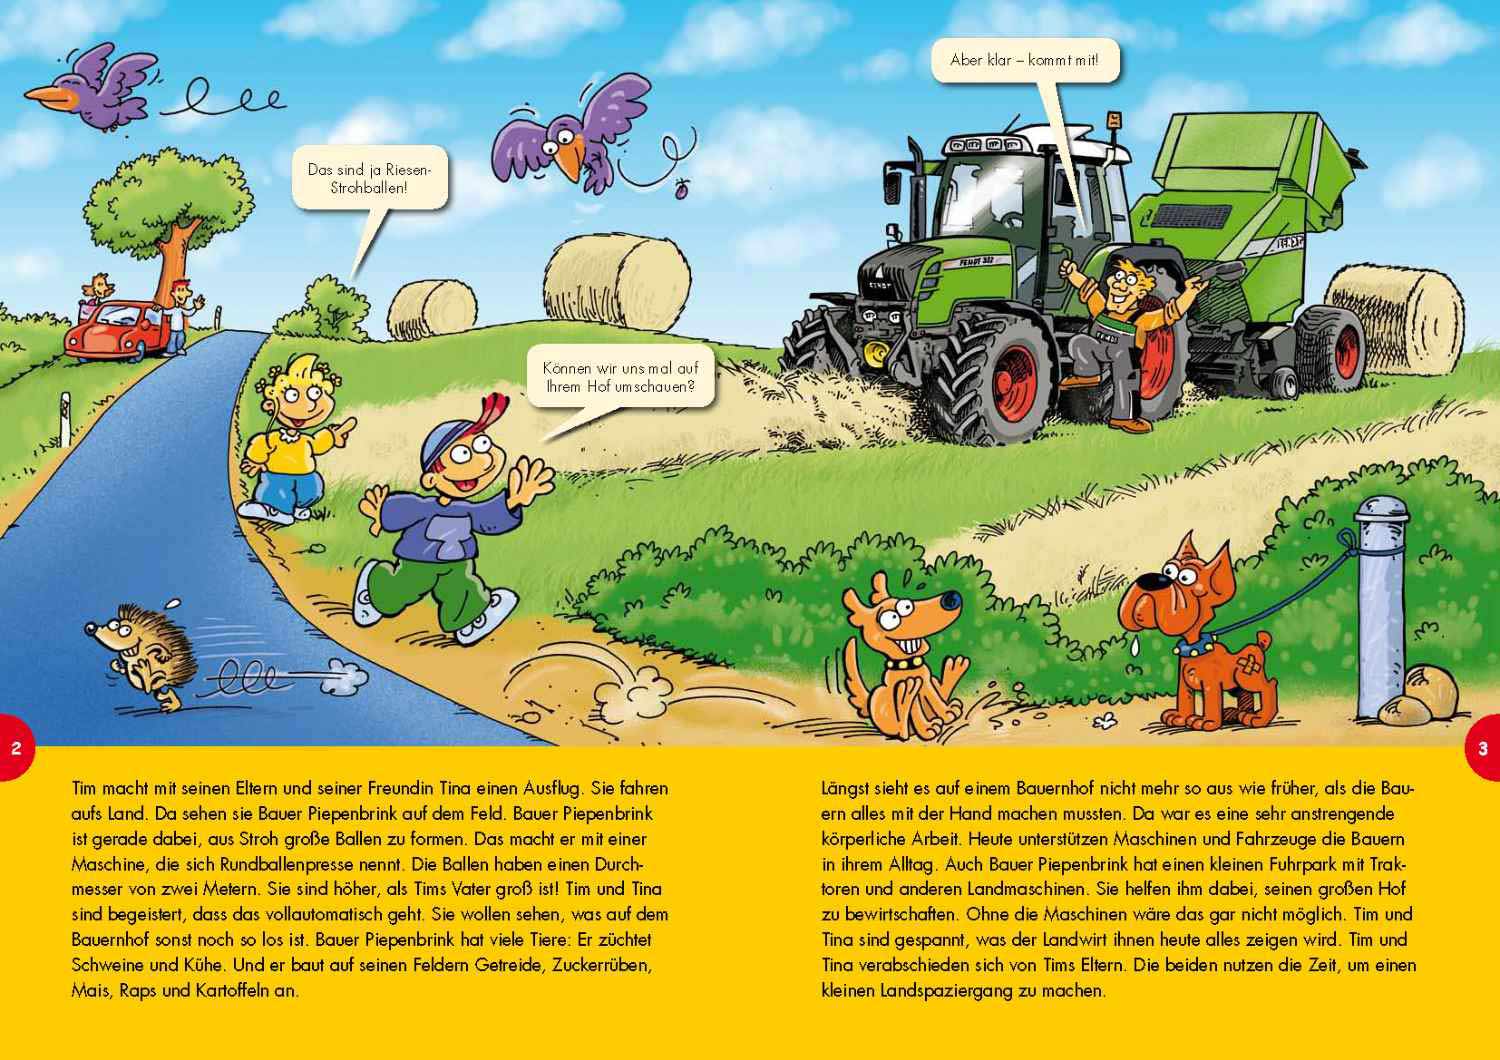 Der moderne Bauernhof: Seiten 2-3